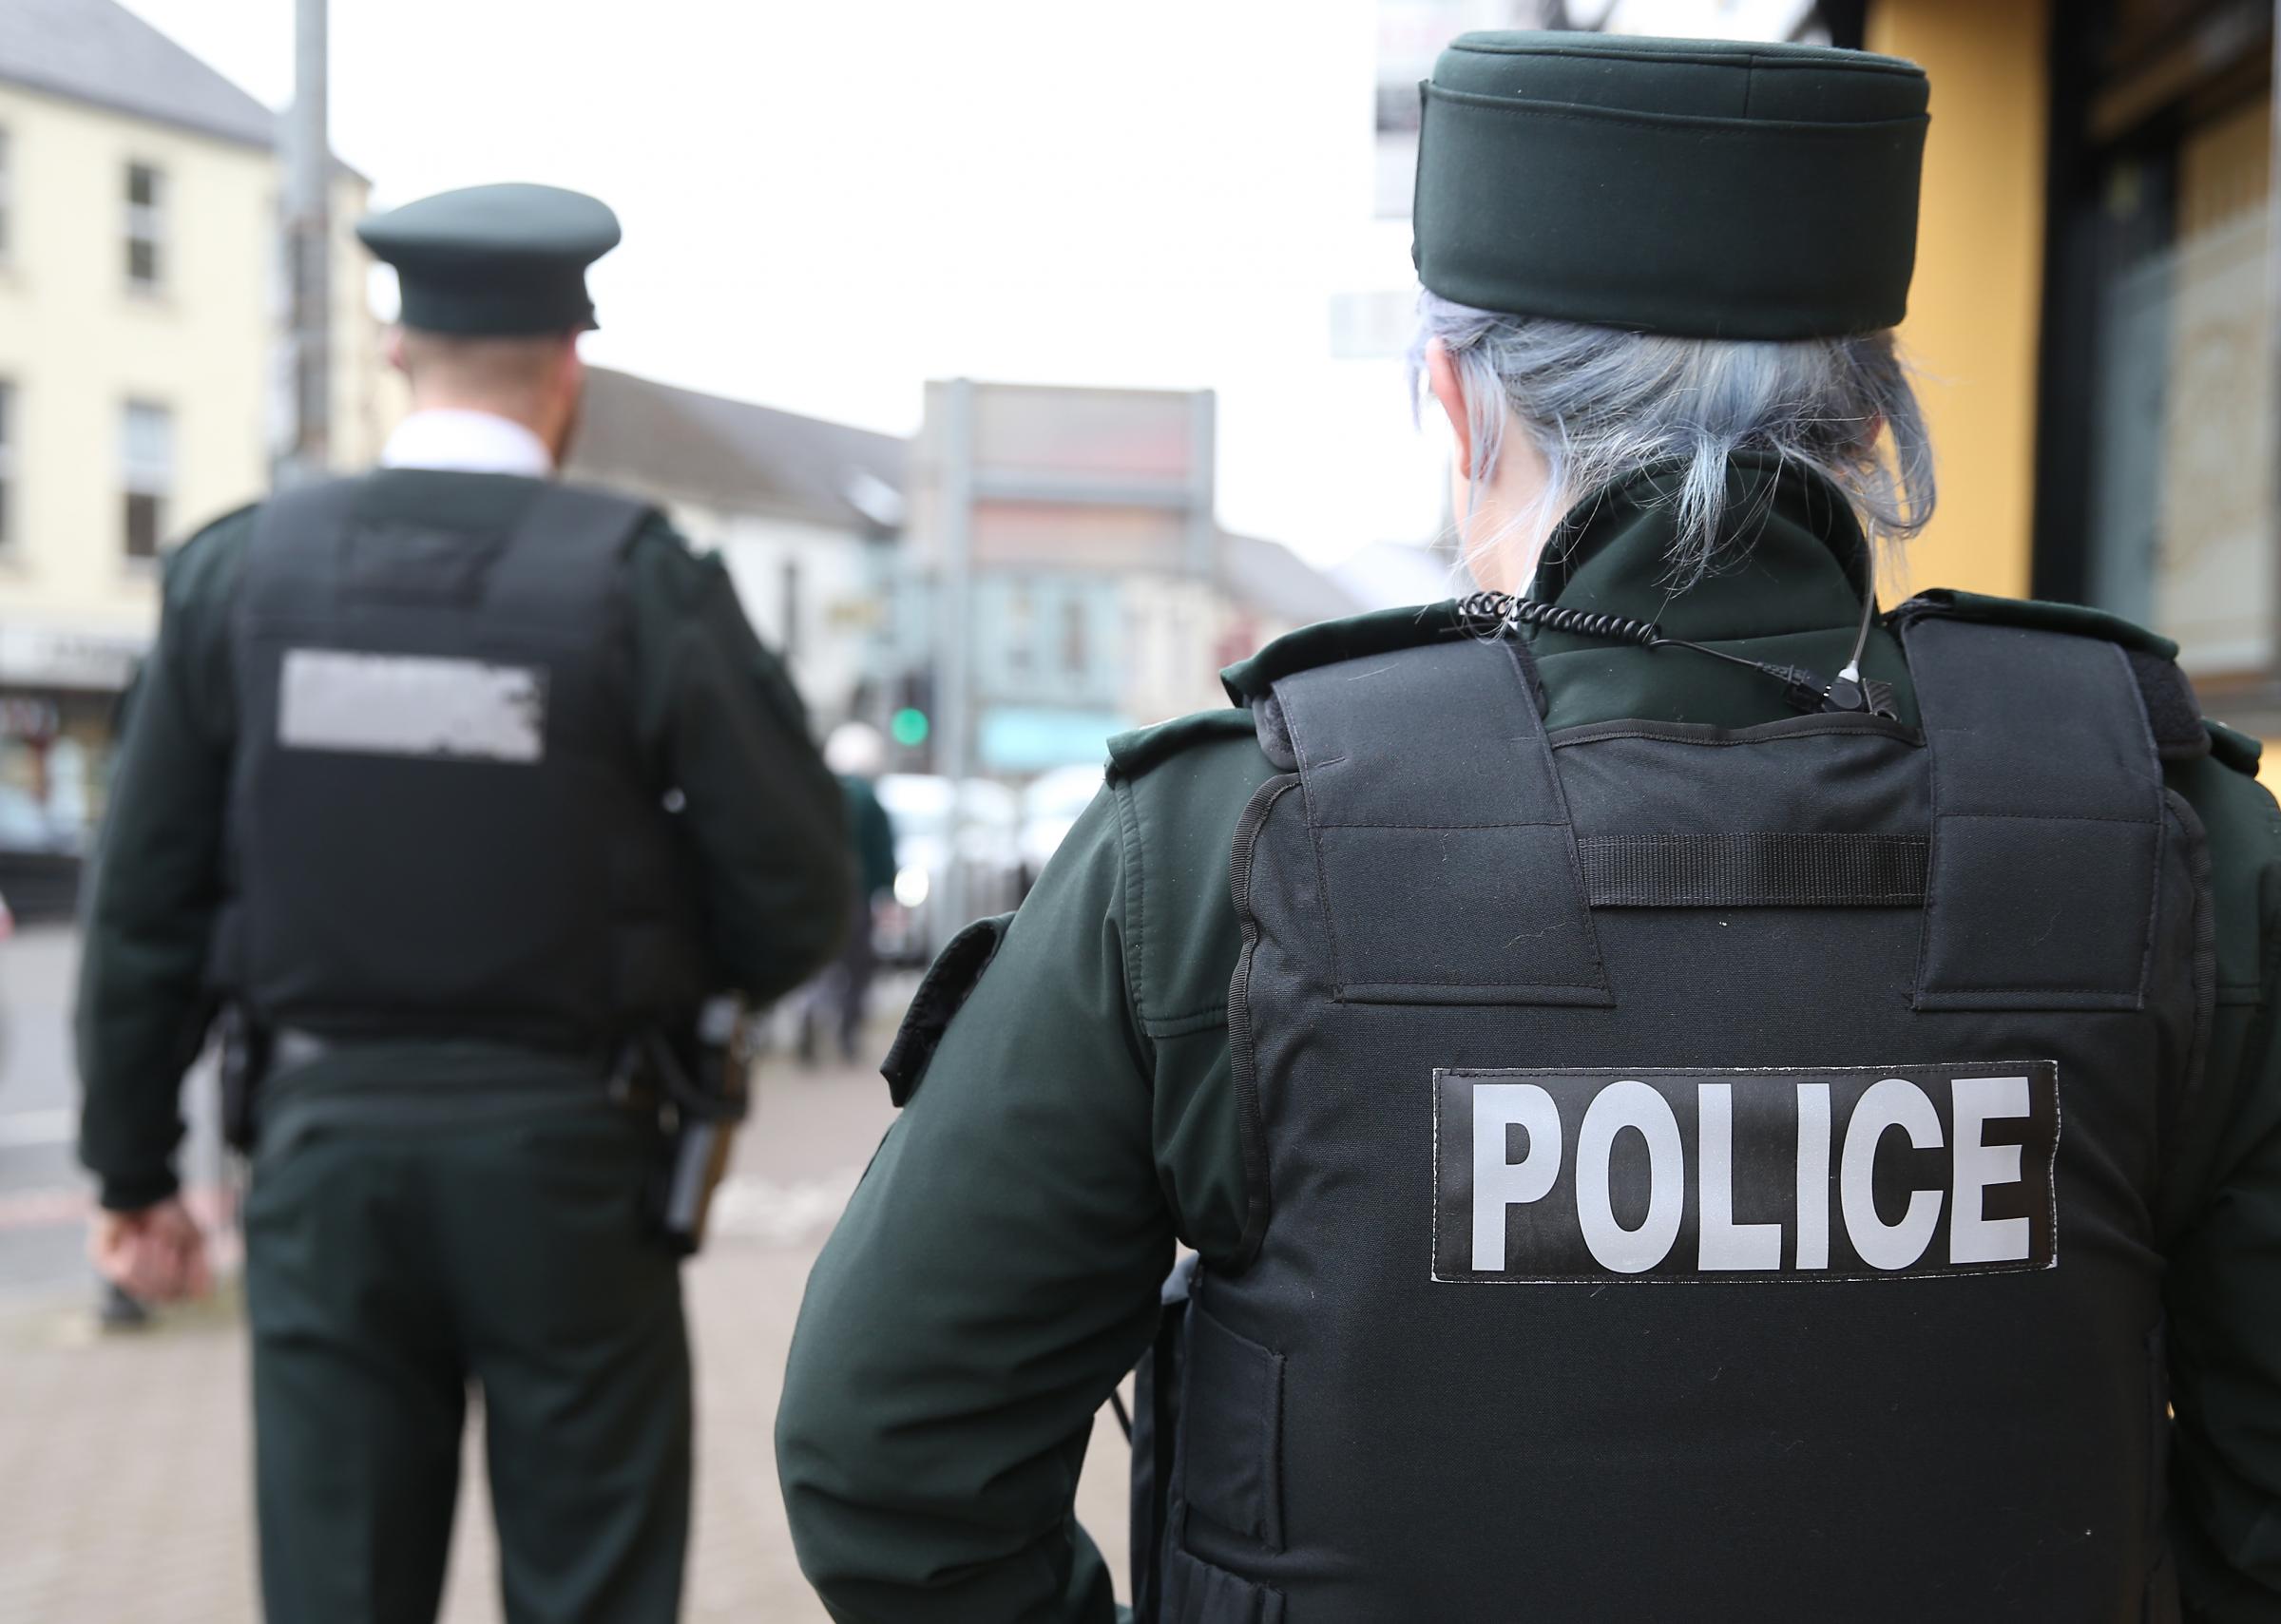 Police in Enniskillen investigating criminal damage to property